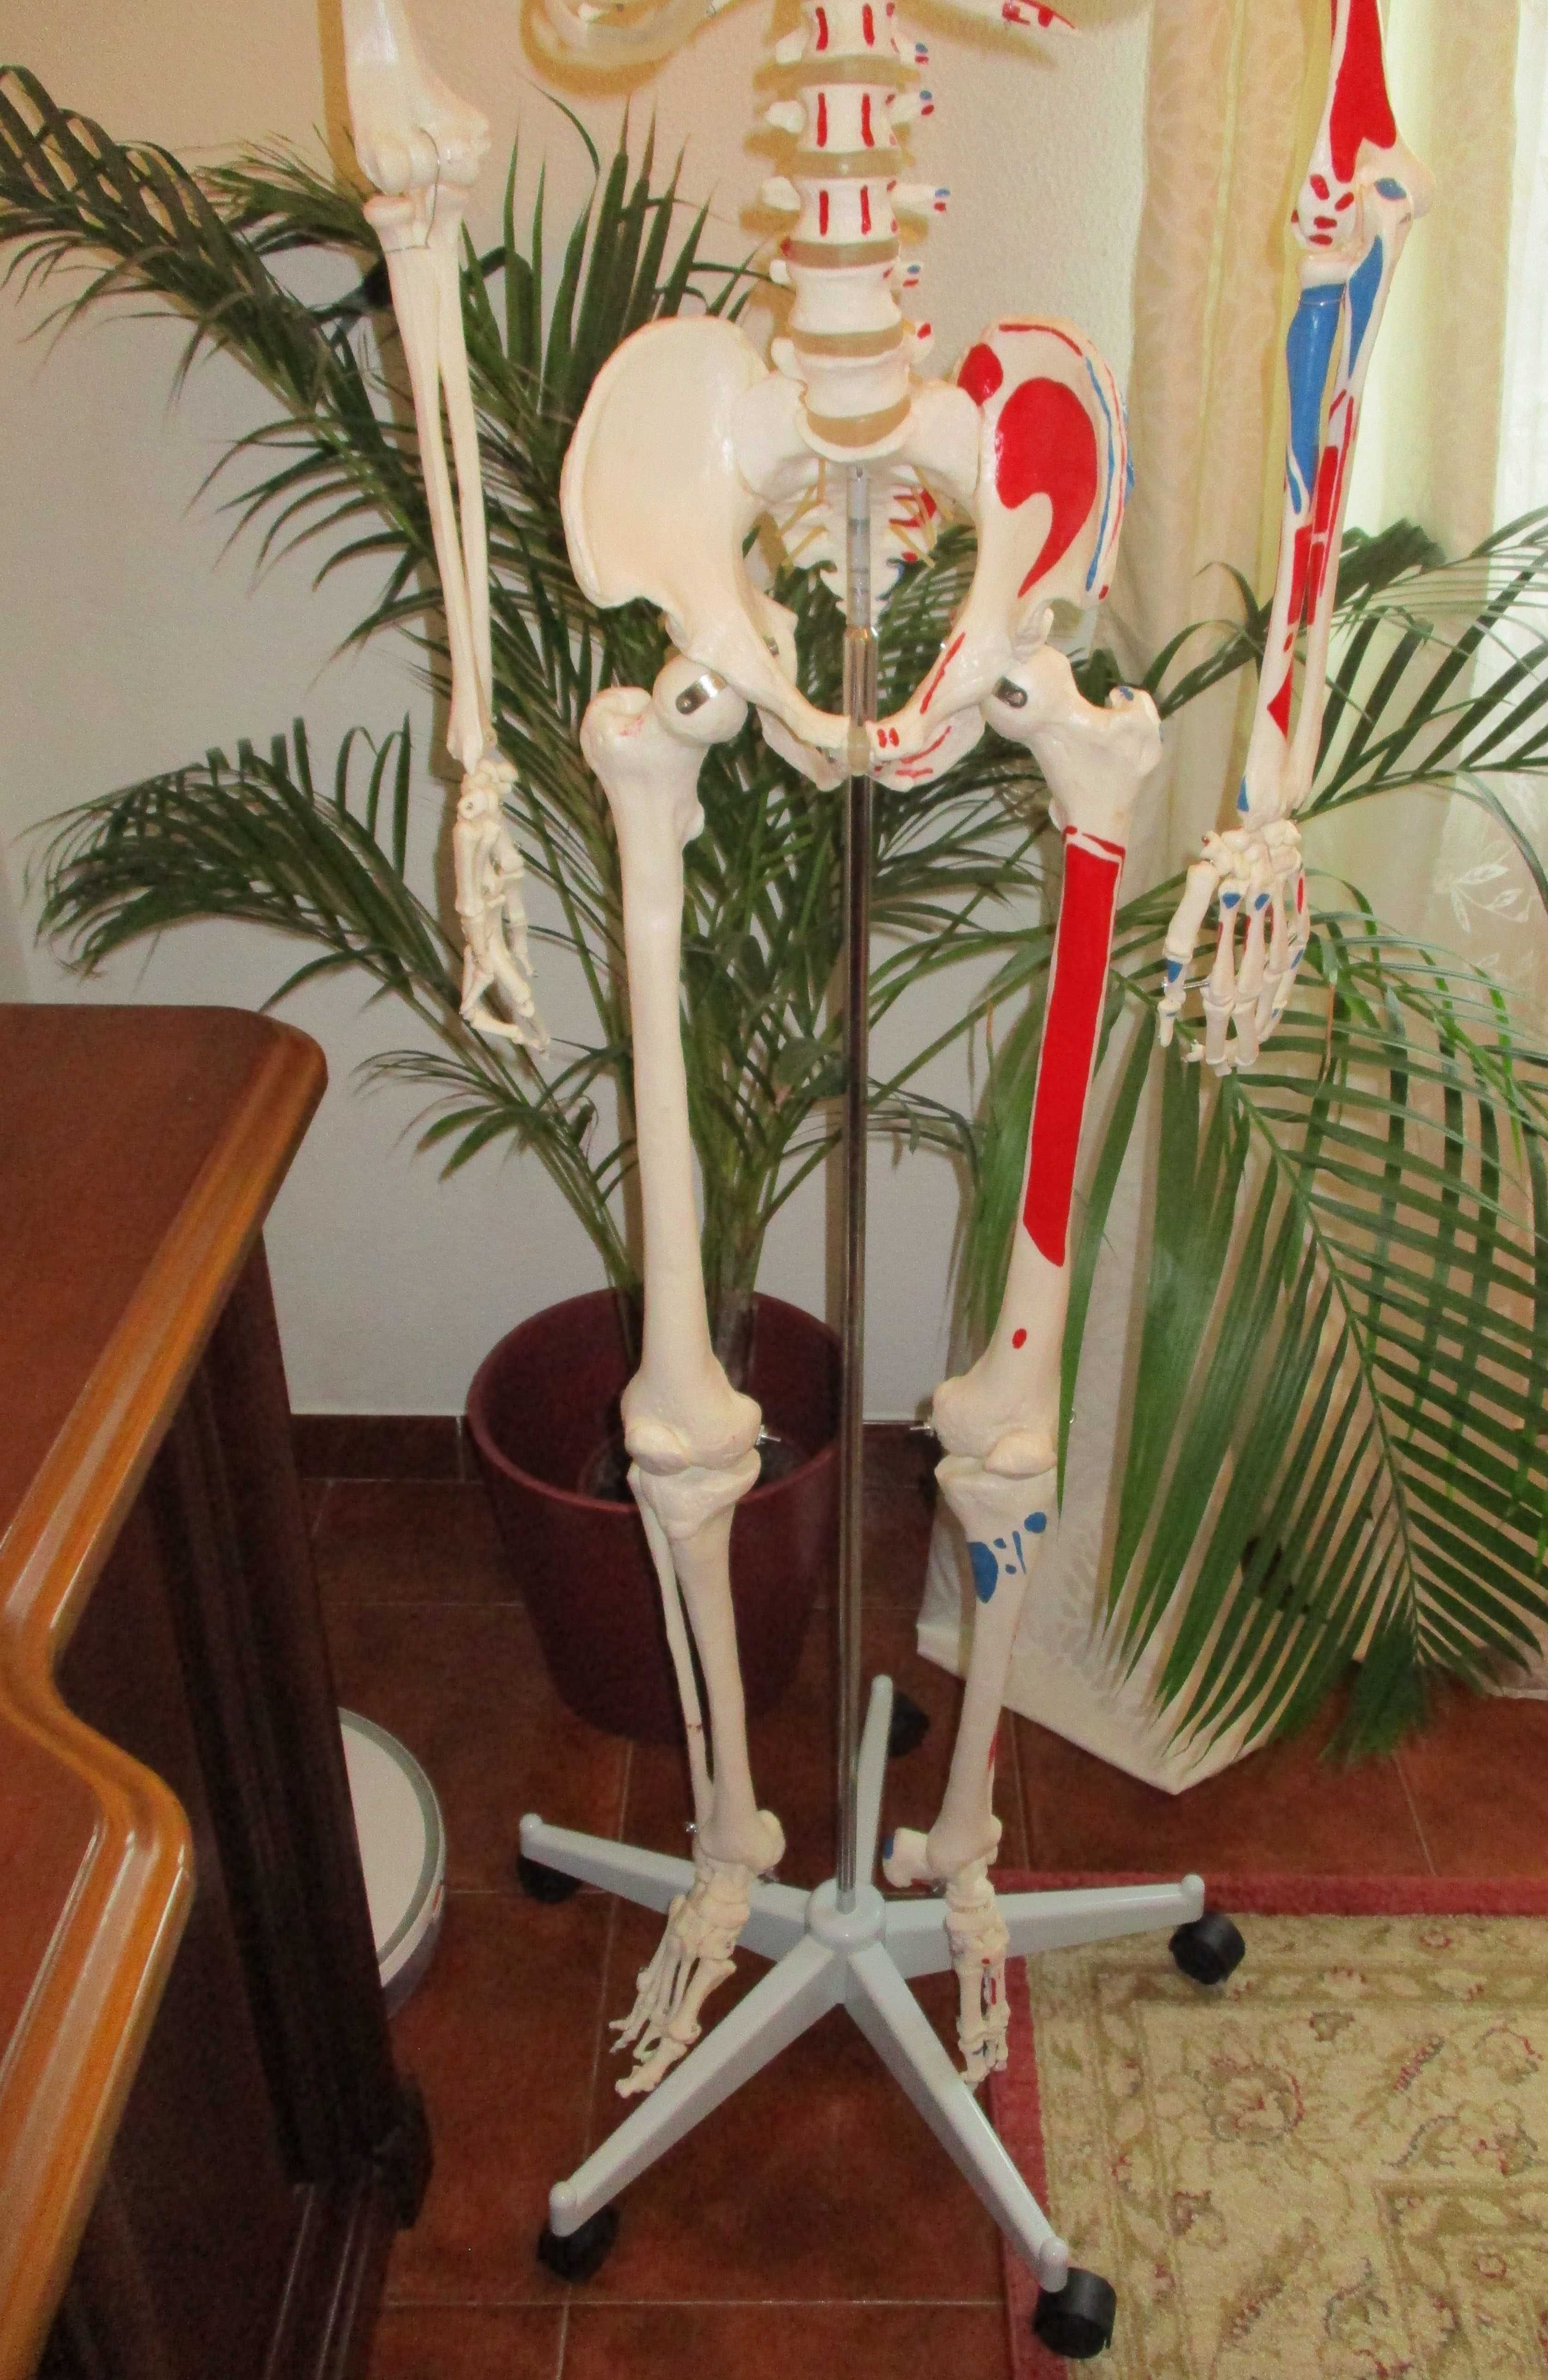 Esqueleto com Musculos e ossos – estudo saude e medicina